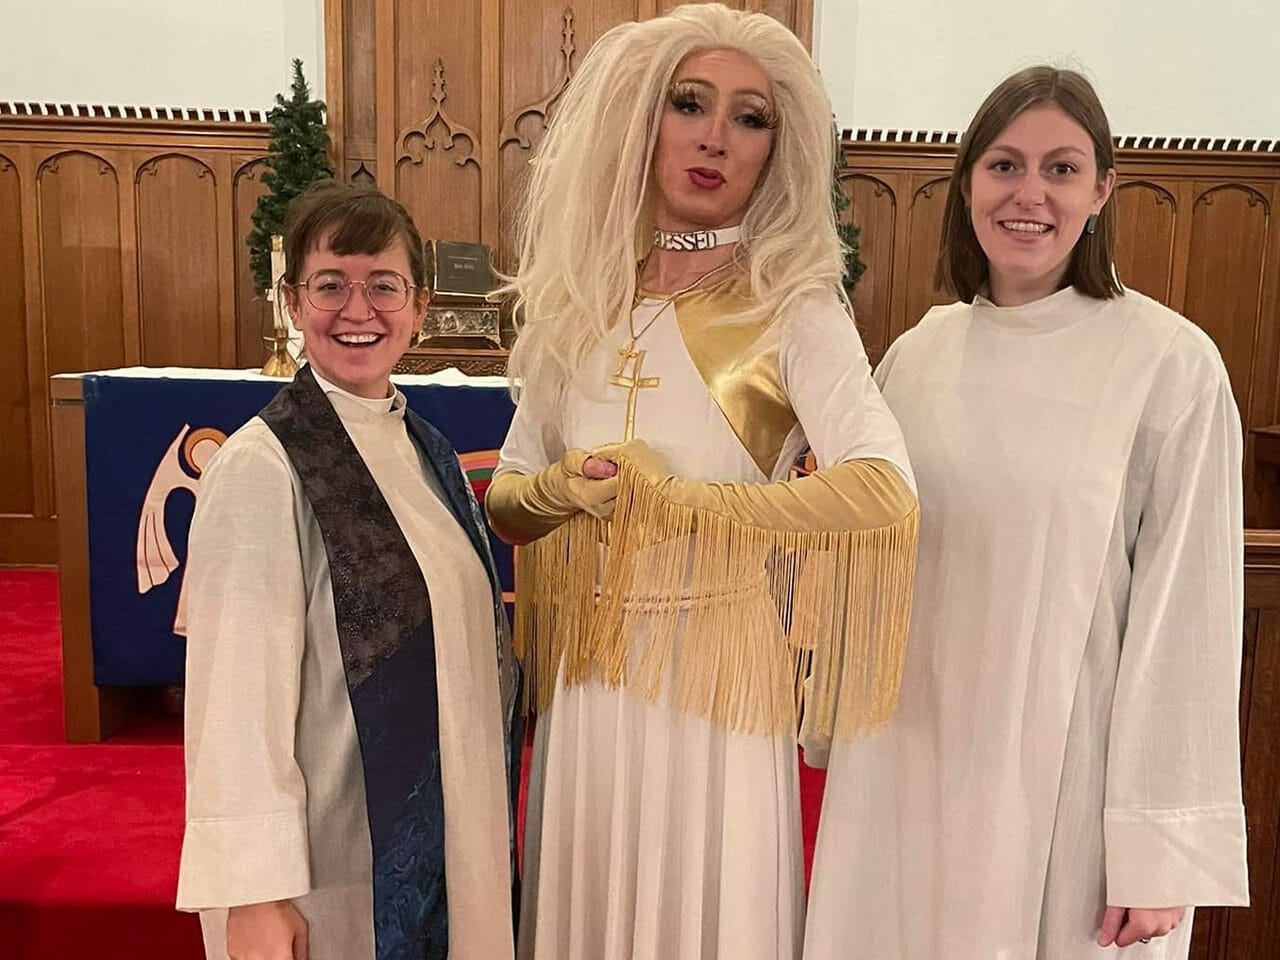 Pastor norte americano ministra culto vestido de drag queen